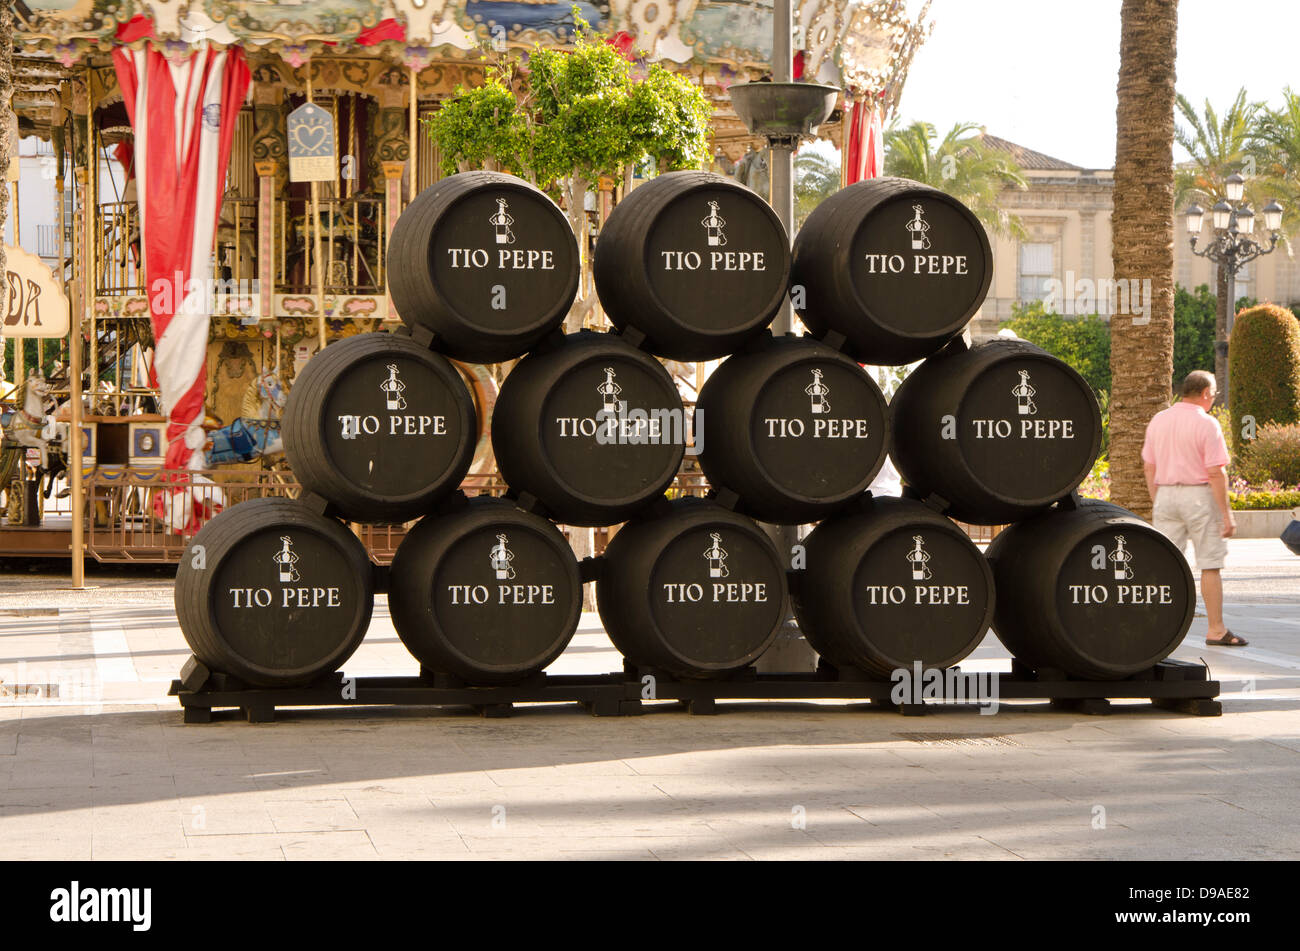 Barili da Tio Pepe, produttori di sherry, Jerez de la Frontera, Andalusia, Spagna. Foto Stock